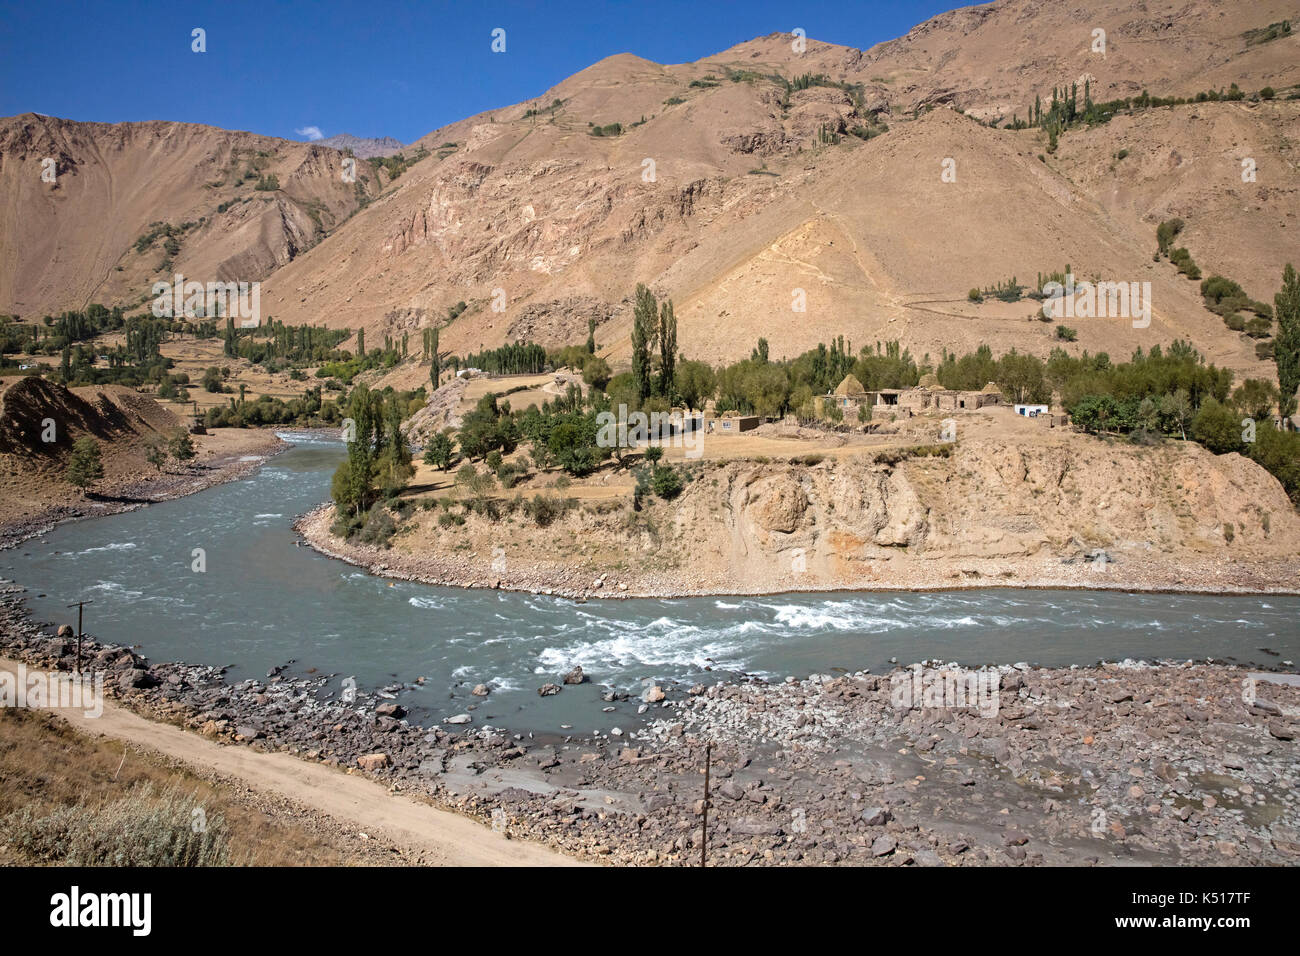 Le petit village afghan et la route de Pamir / M41 le long de la rivière Pamir, forme la frontière entre le Tadjikistan et l'Afghanistan Banque D'Images